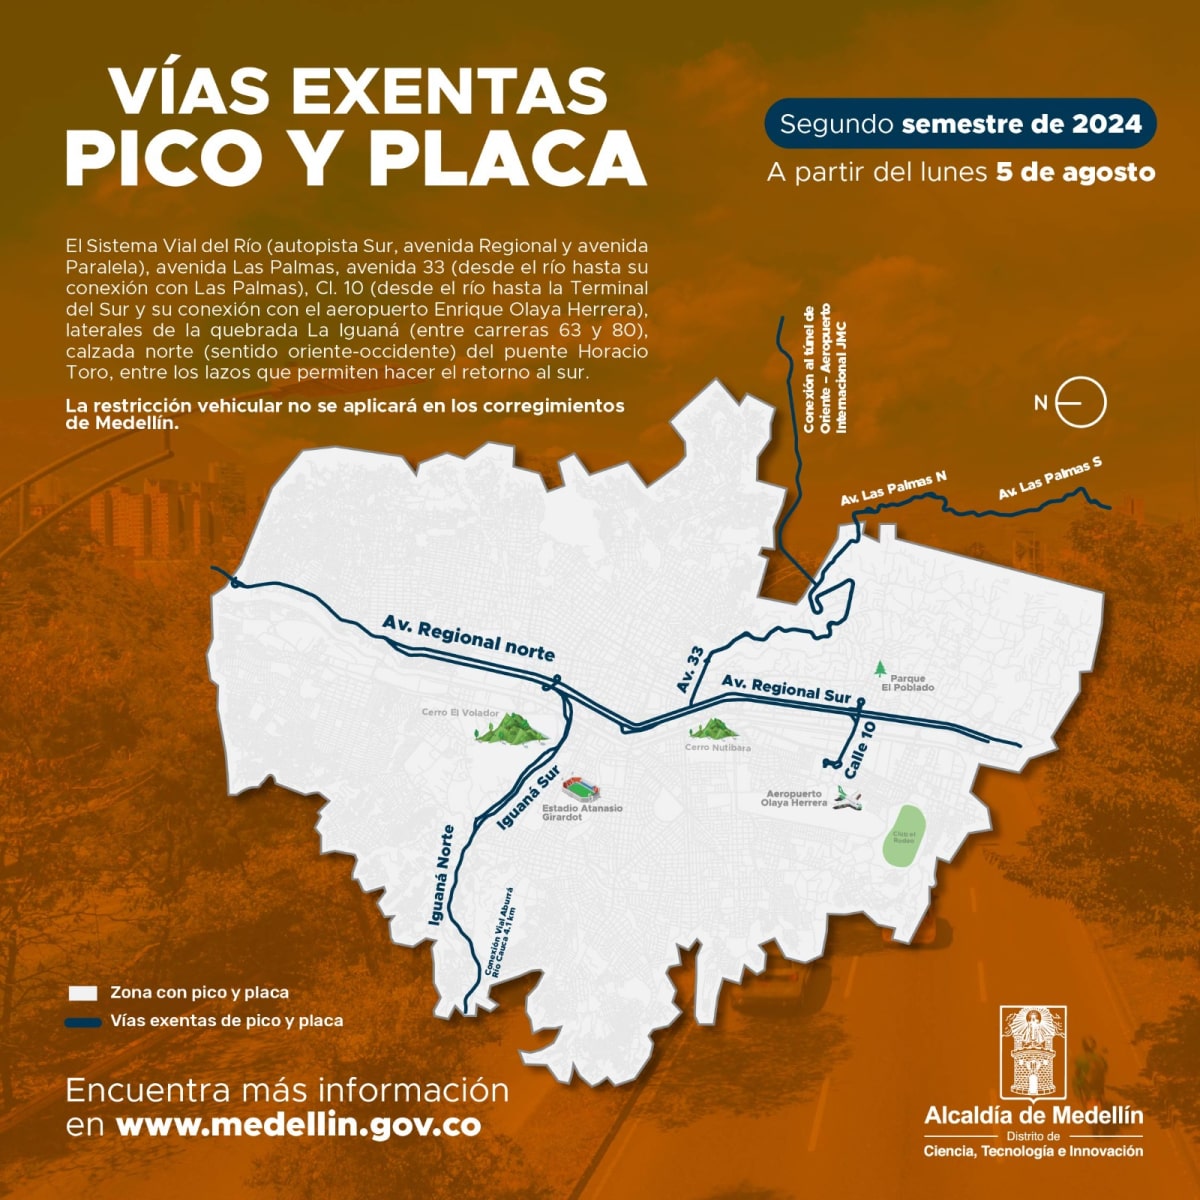 Desde este 5 de agosto rige la rotación del Pico y Placa para el segundo semestre de 2024 en Medellín y el área metropolitana